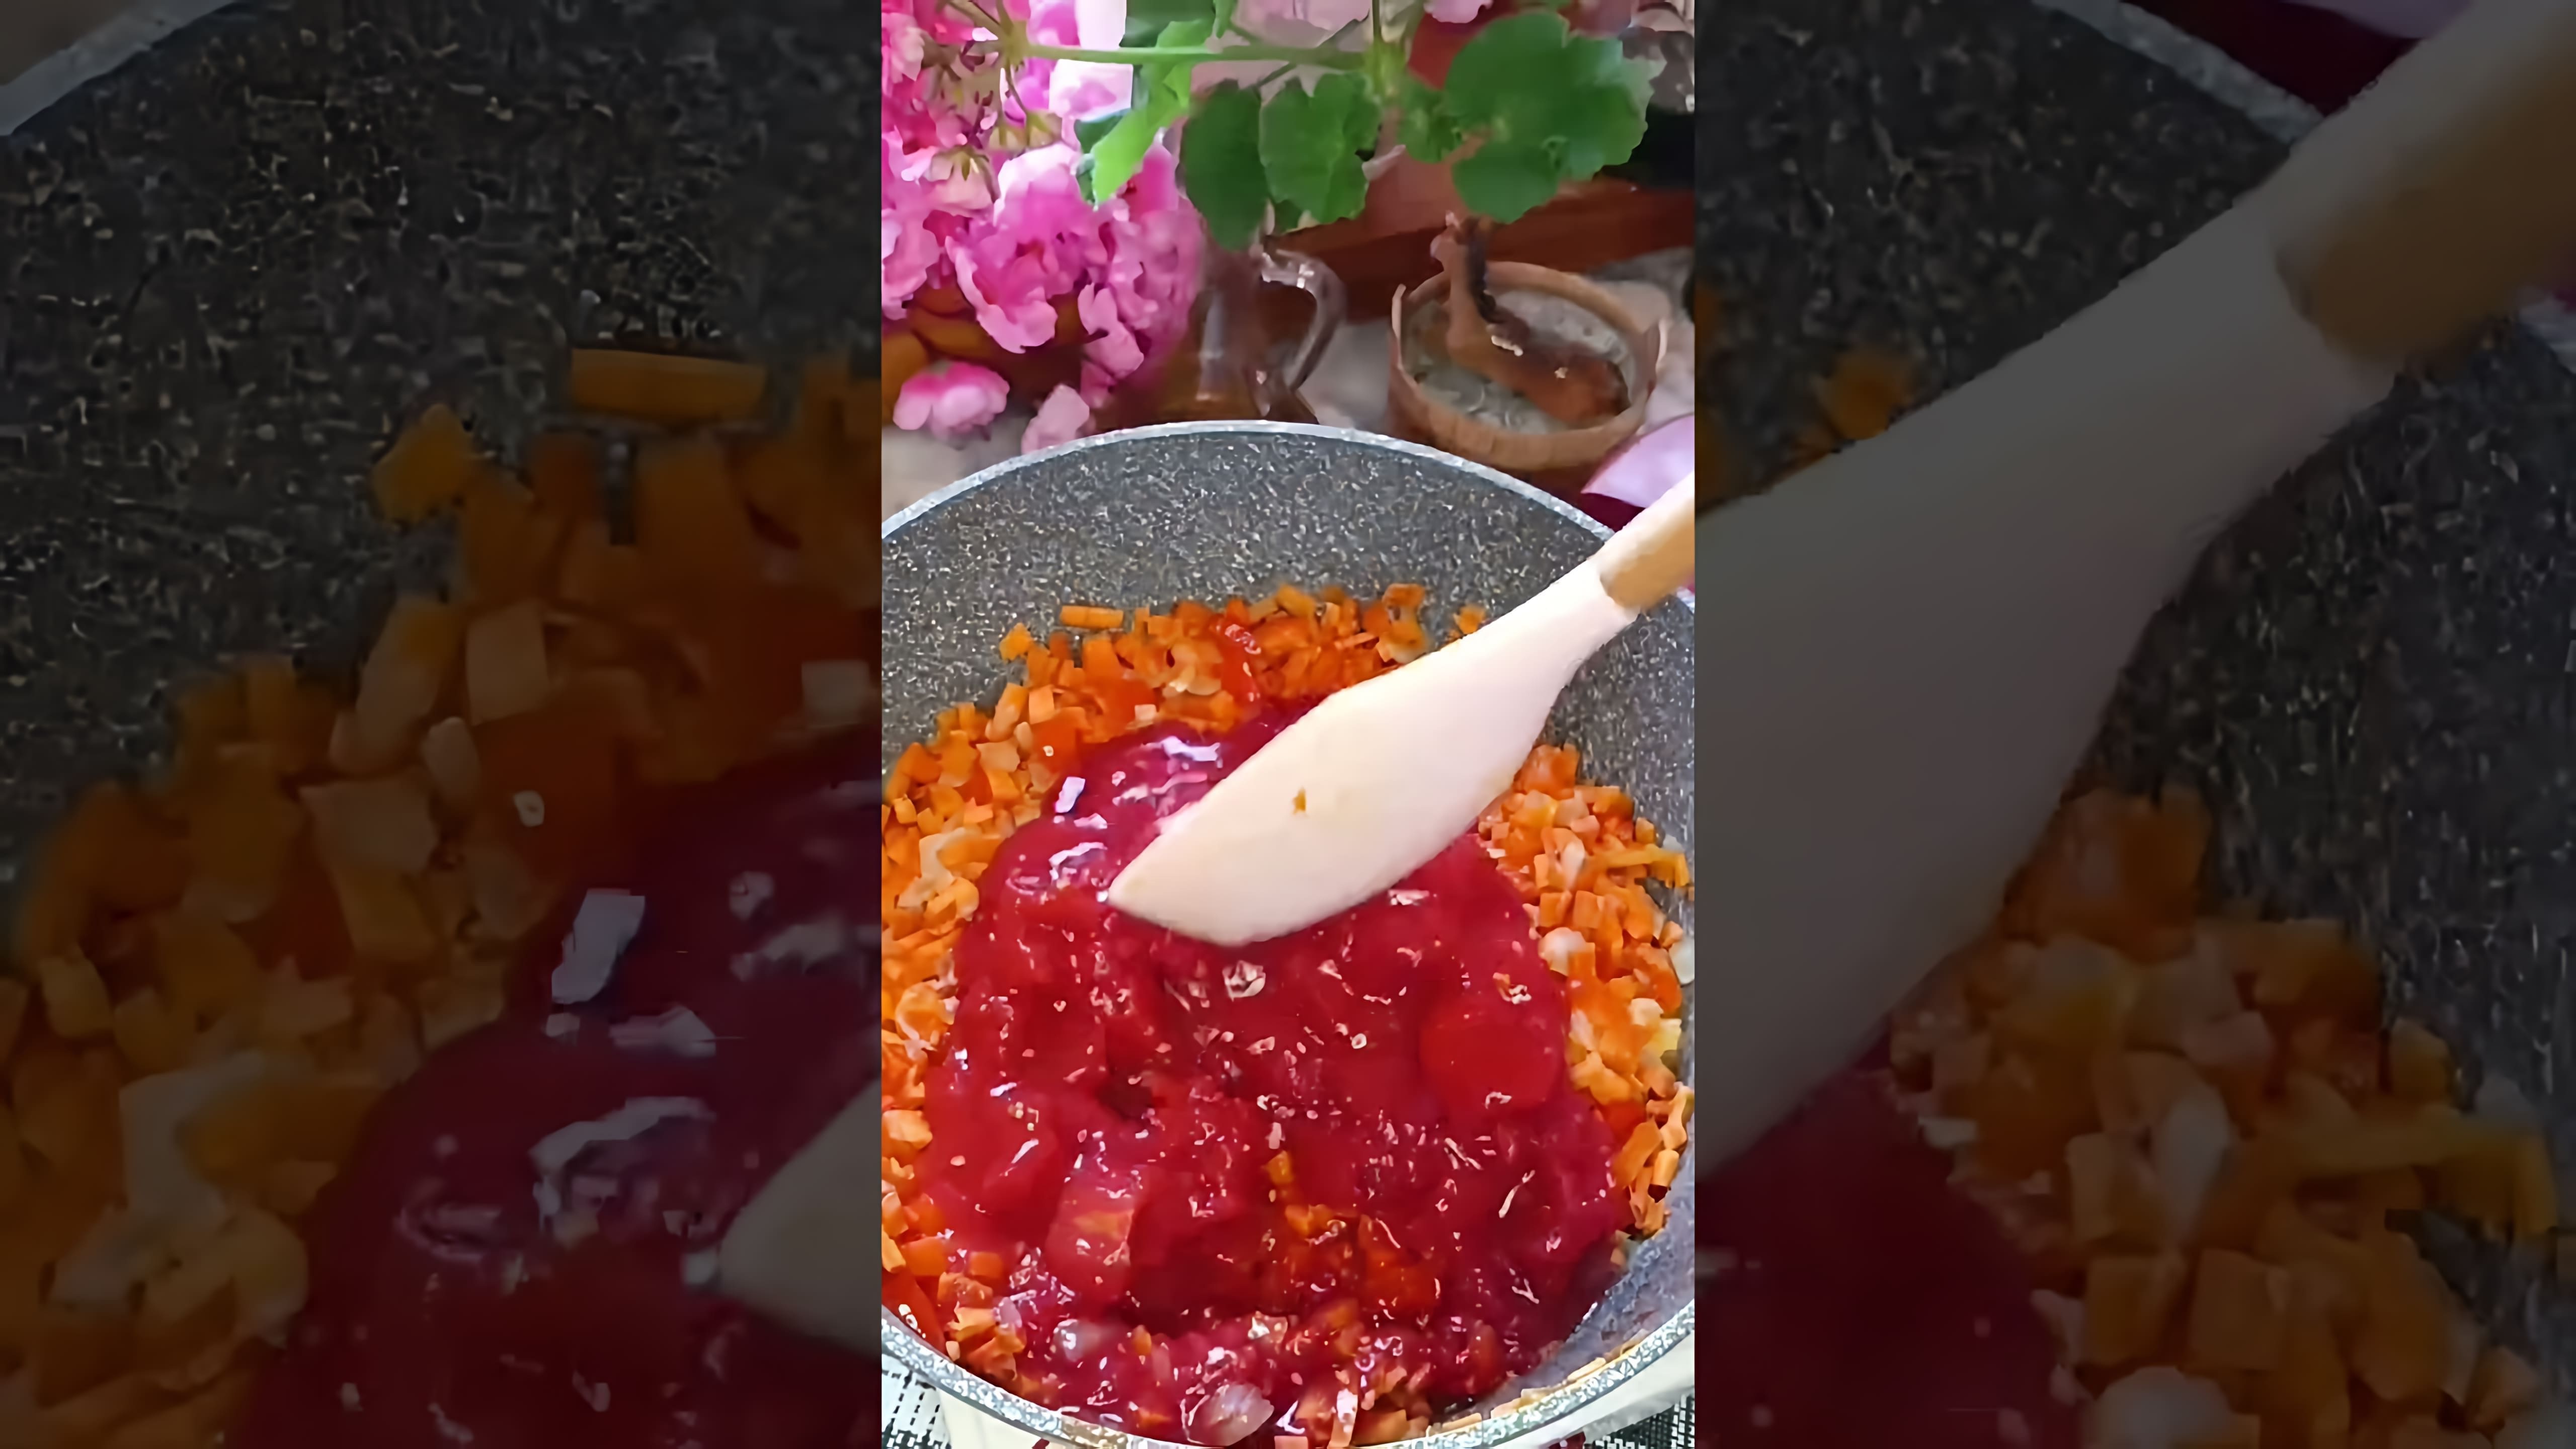 В этом видео демонстрируется рецепт приготовления вкусной закуски из моркови, болгарского перца и лука